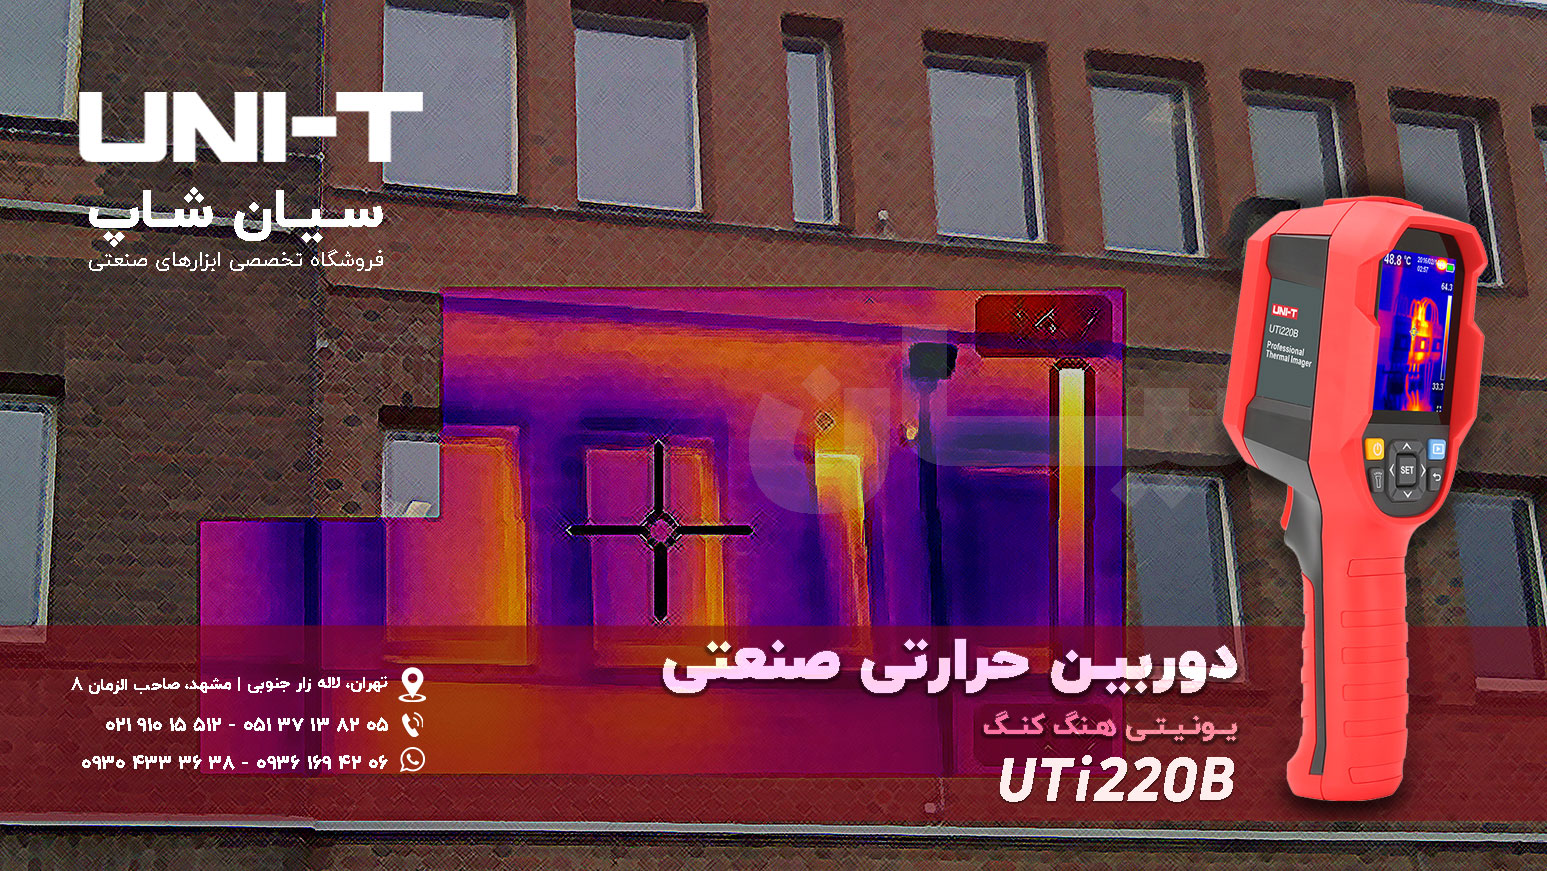 دوربین حرارتی ارزان قیمت یونیتی UNI-T UTi220B